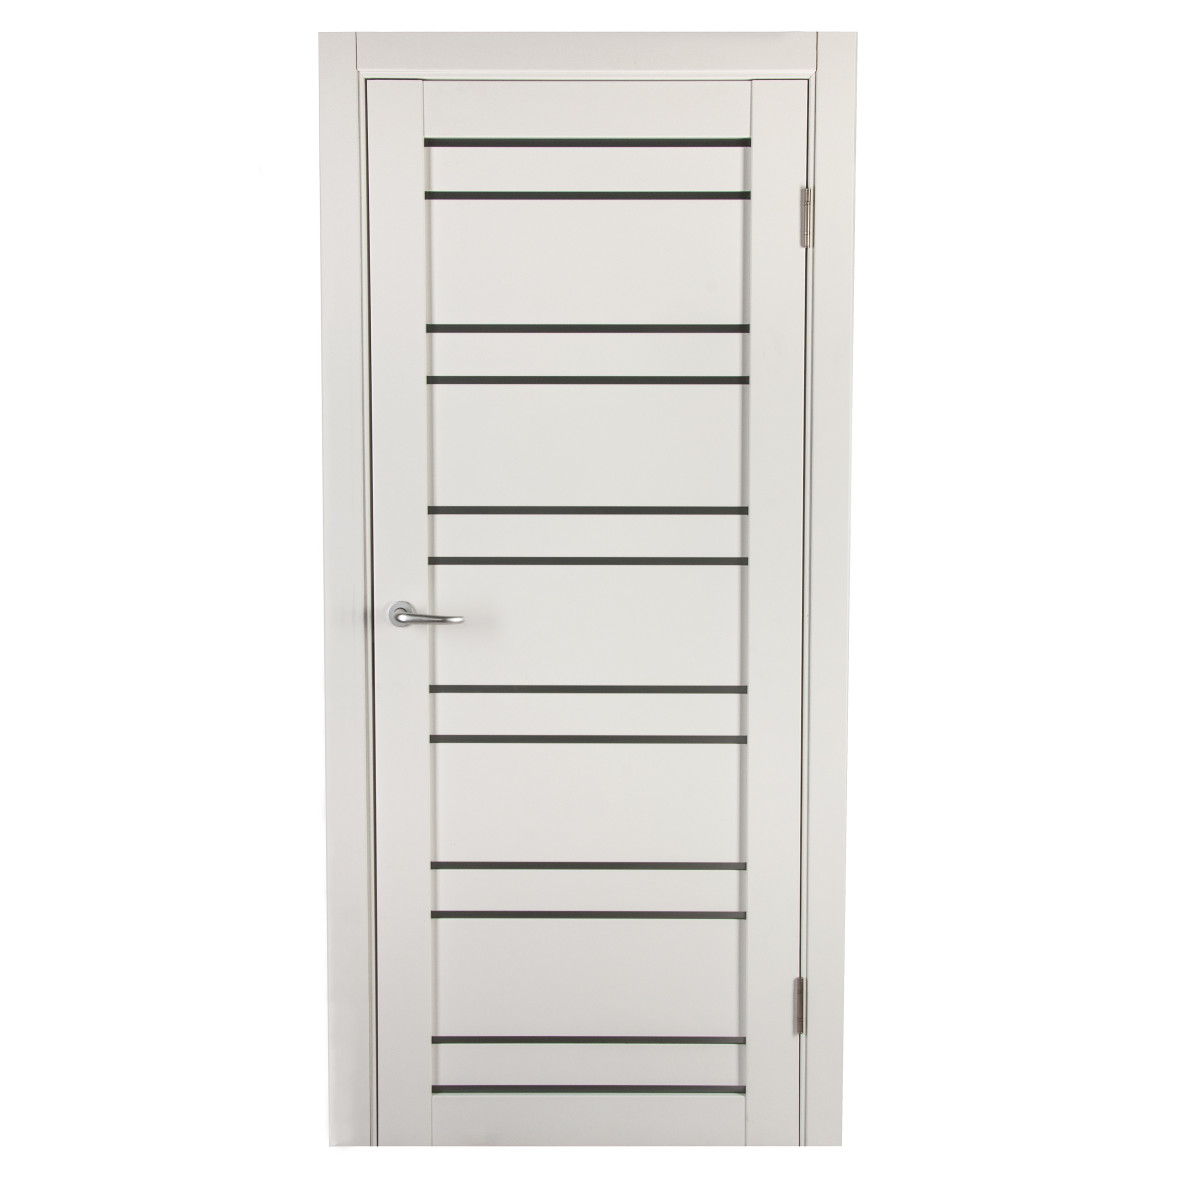 Дверь межкомнатная остеклённая с фурнитурой Парма 90х200 см, Hardflex, цвет белый